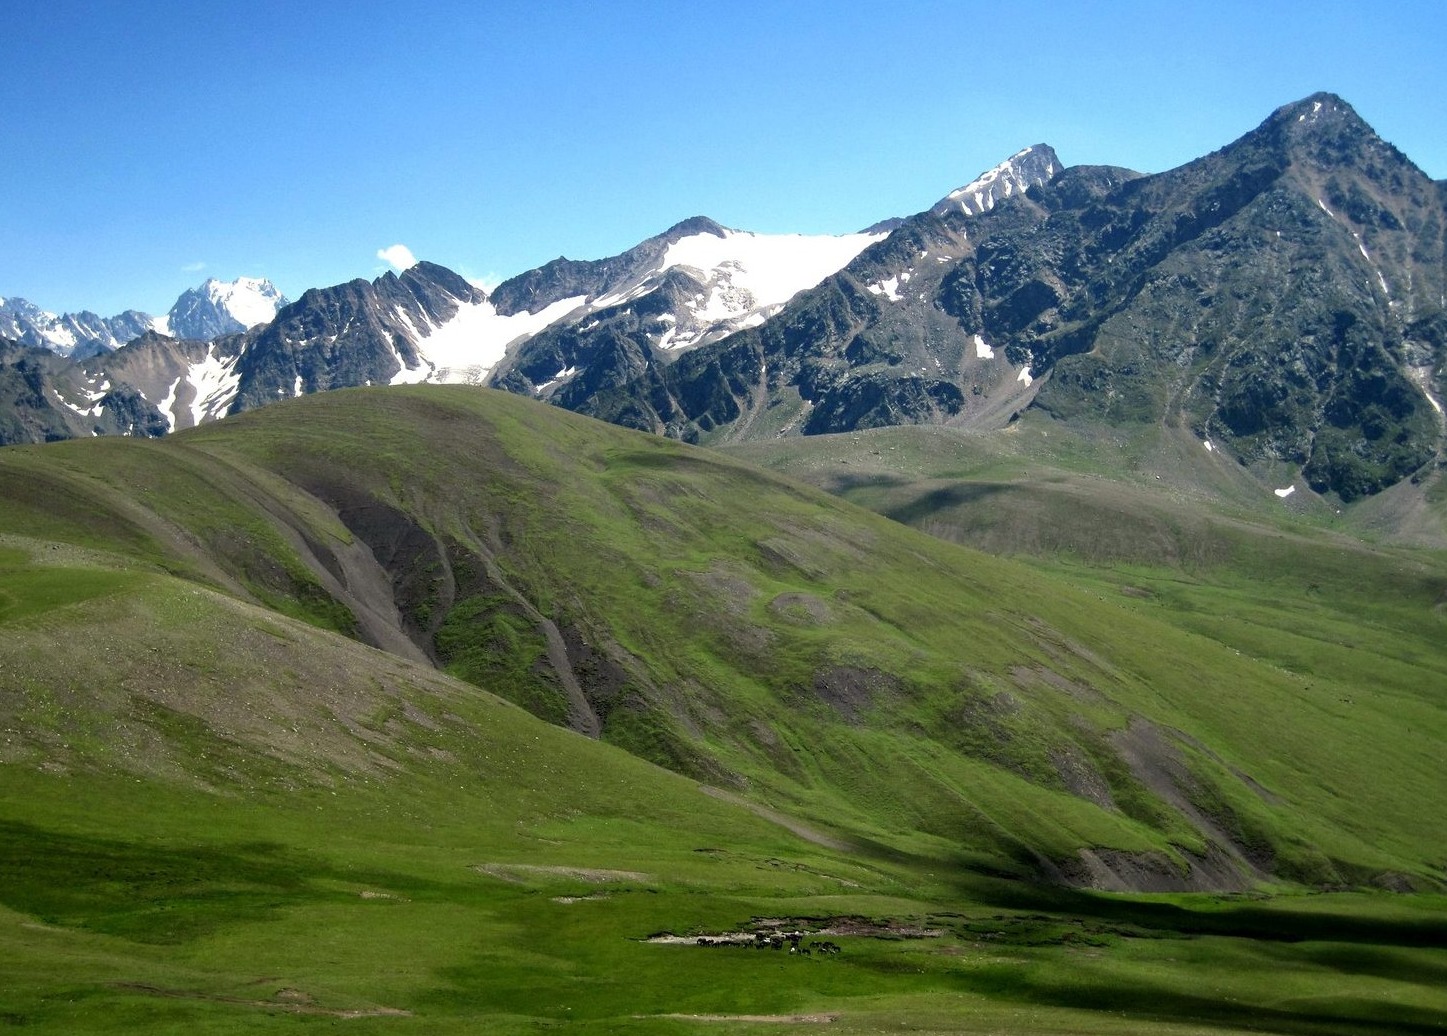 Отчет о спортивном горном походе 4 категории сложности  по Центральному Кавказу 